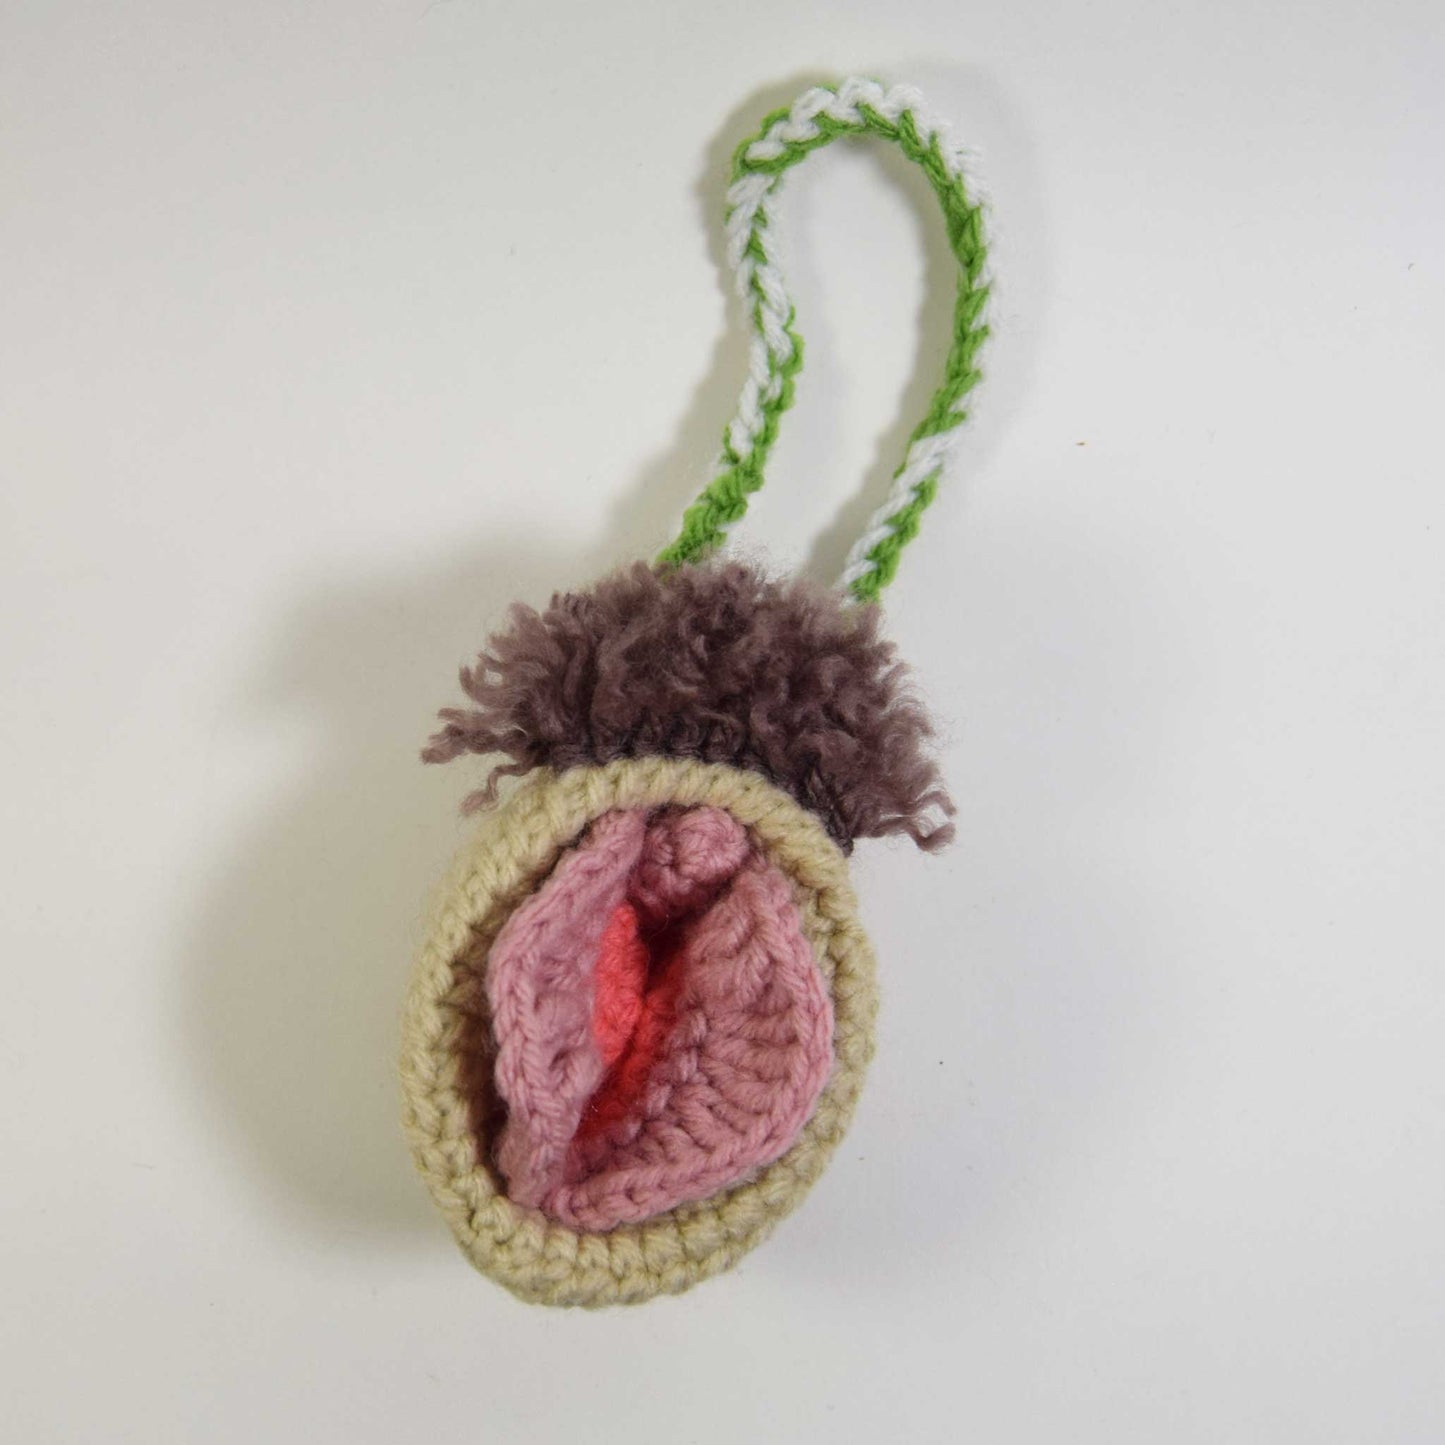 Crochet Va-Jay-Jay (Vulva) Pattern